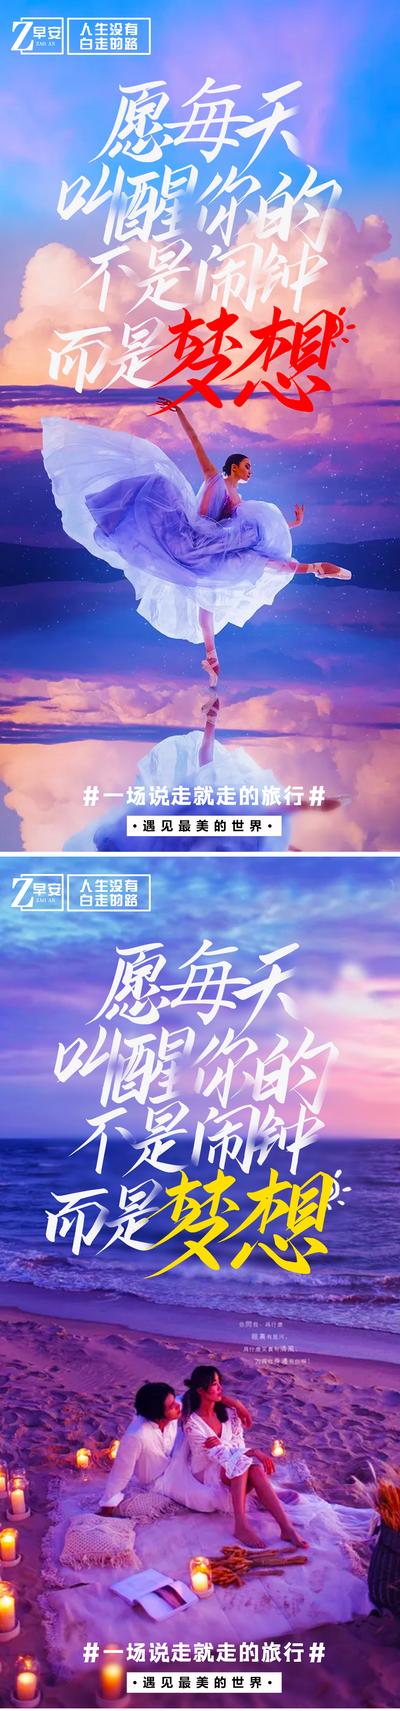 南门网 海报 旅游 早安 励志 自由行 湖北 三峡 重庆 